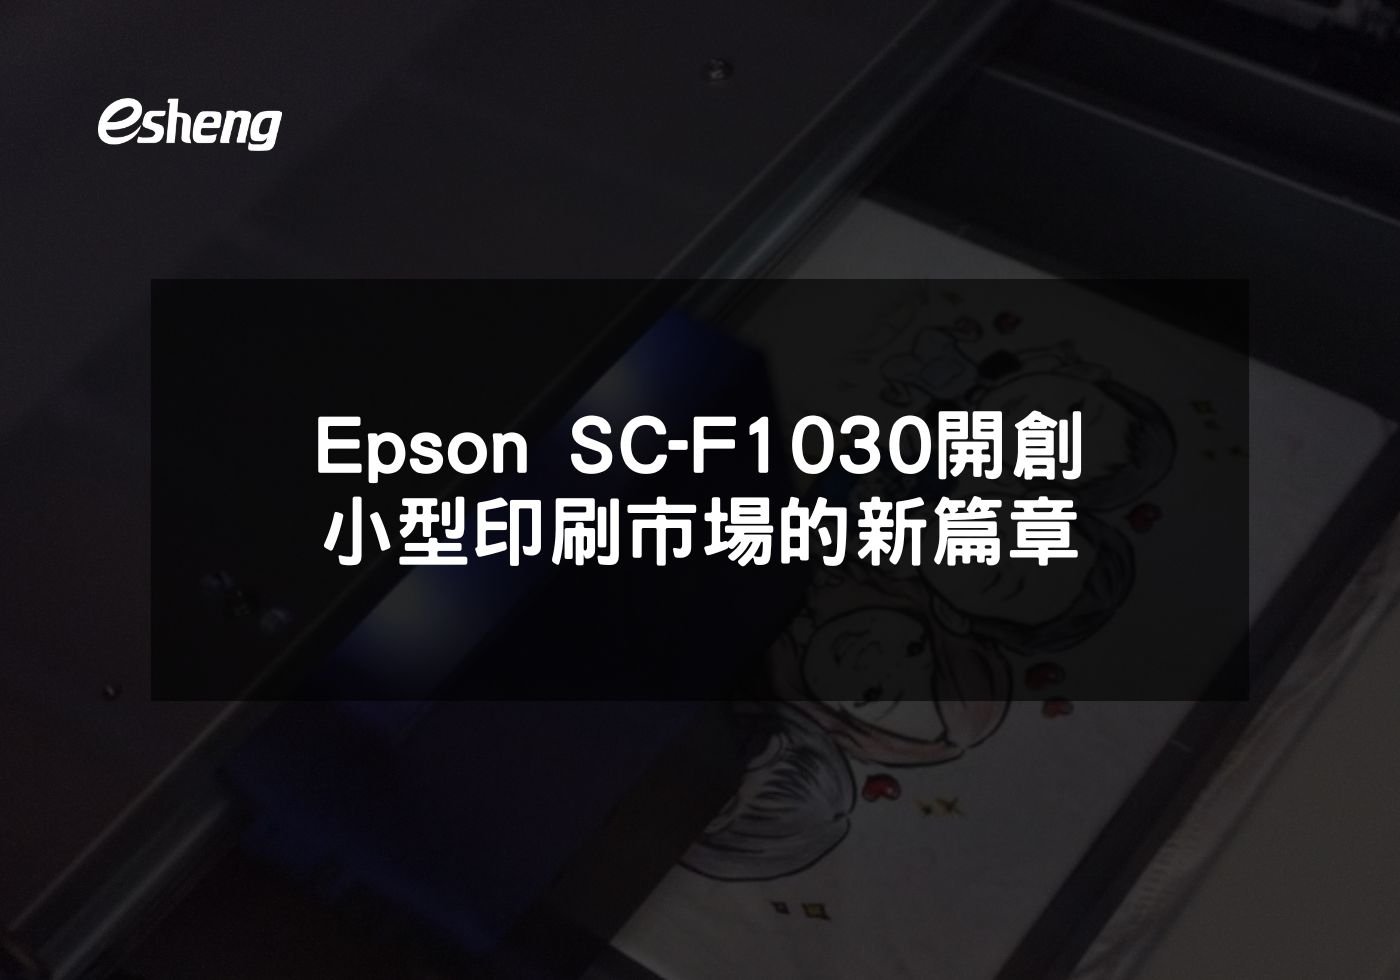 您目前正在查看 Epson SC-F1030開創小型印刷市場的新篇章